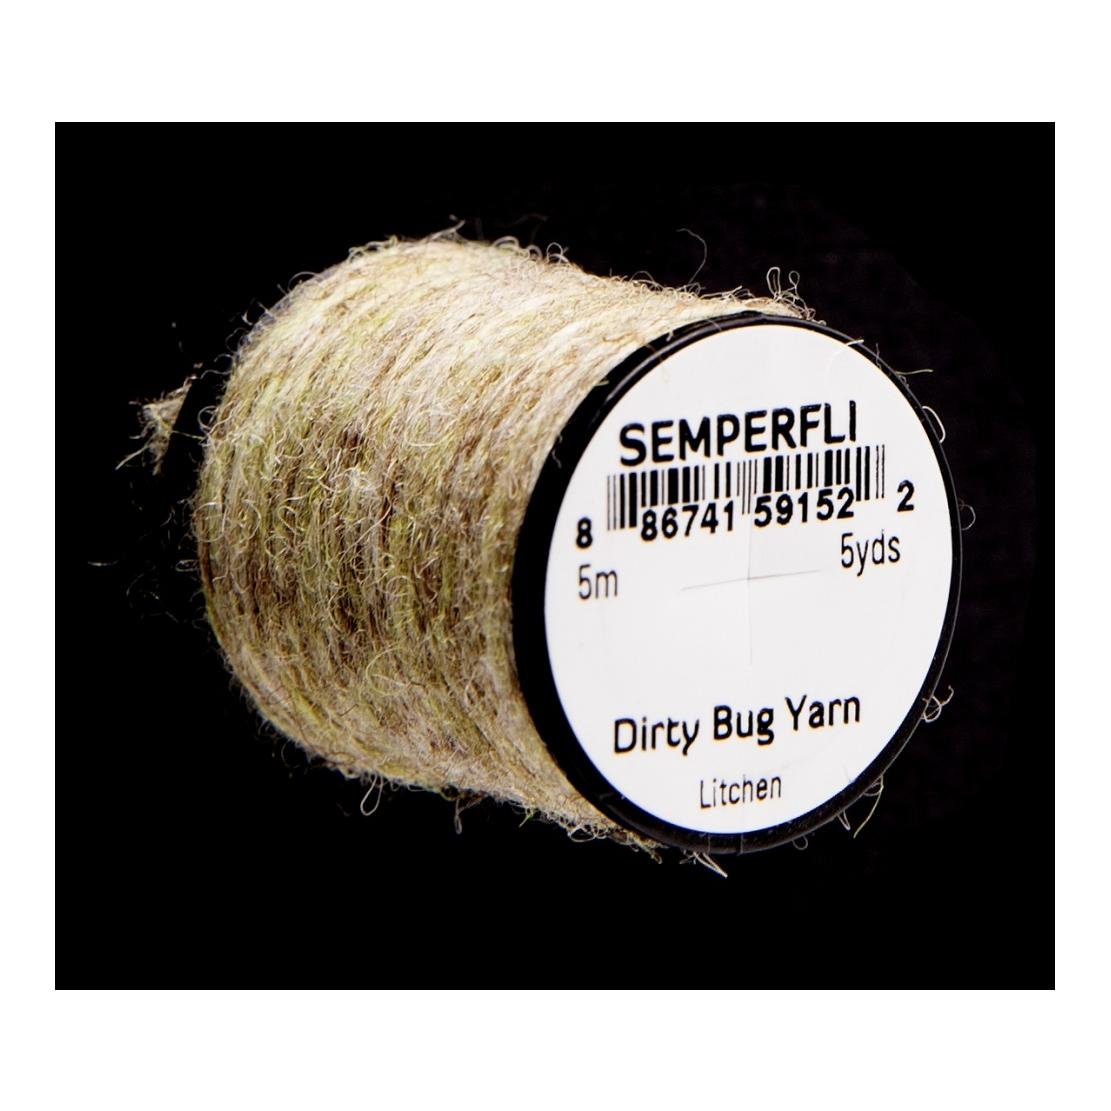 Image of Semperfli Dirty Bug Yarn Litchen bei fischen.ch